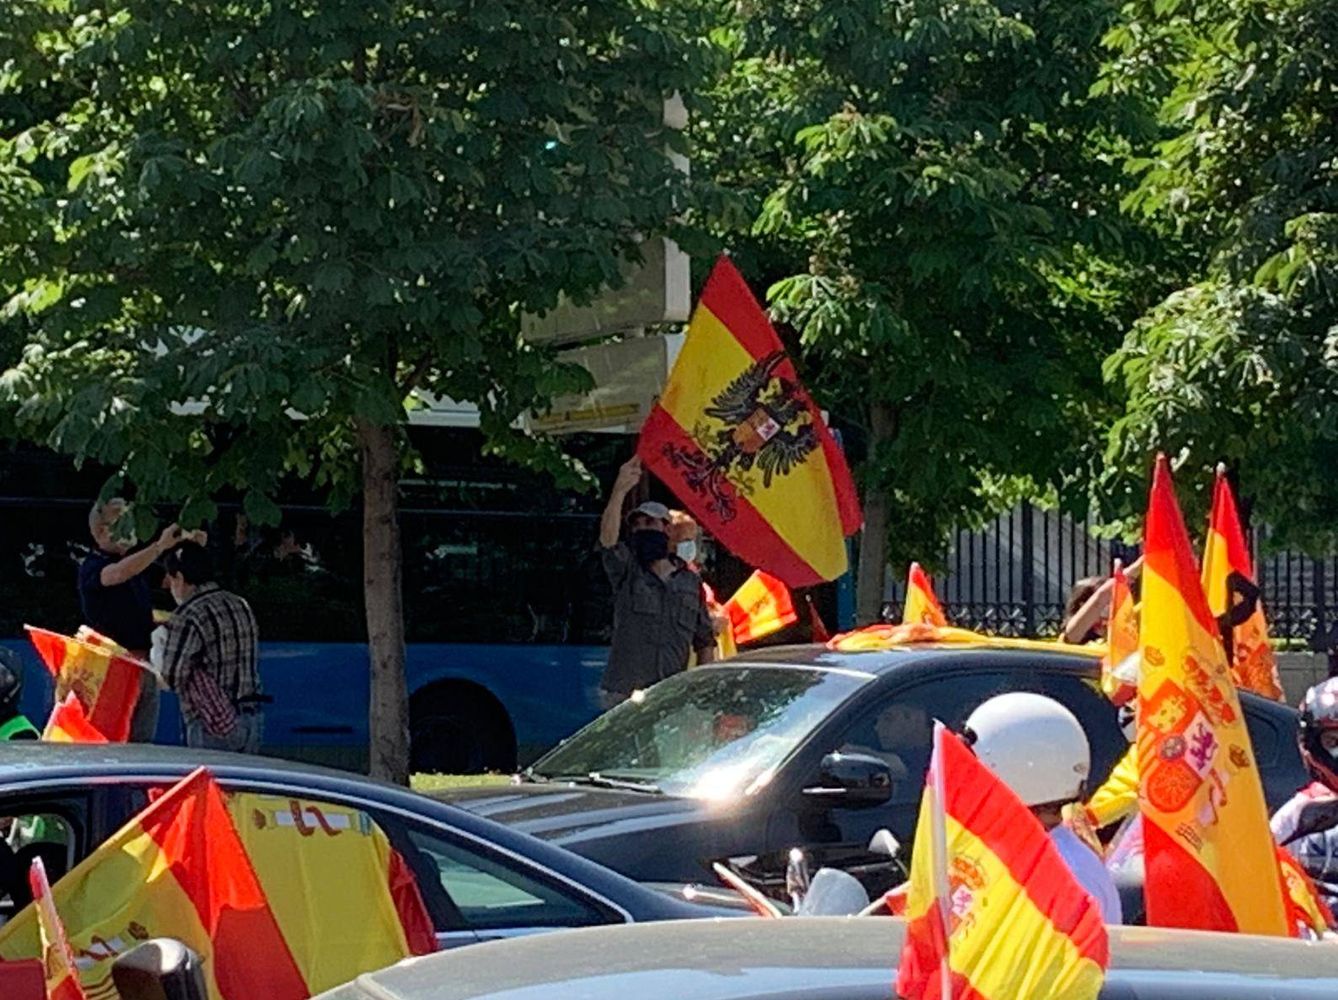 Cabecera de la manifestación en Madrid, en Colón. (P. G.)